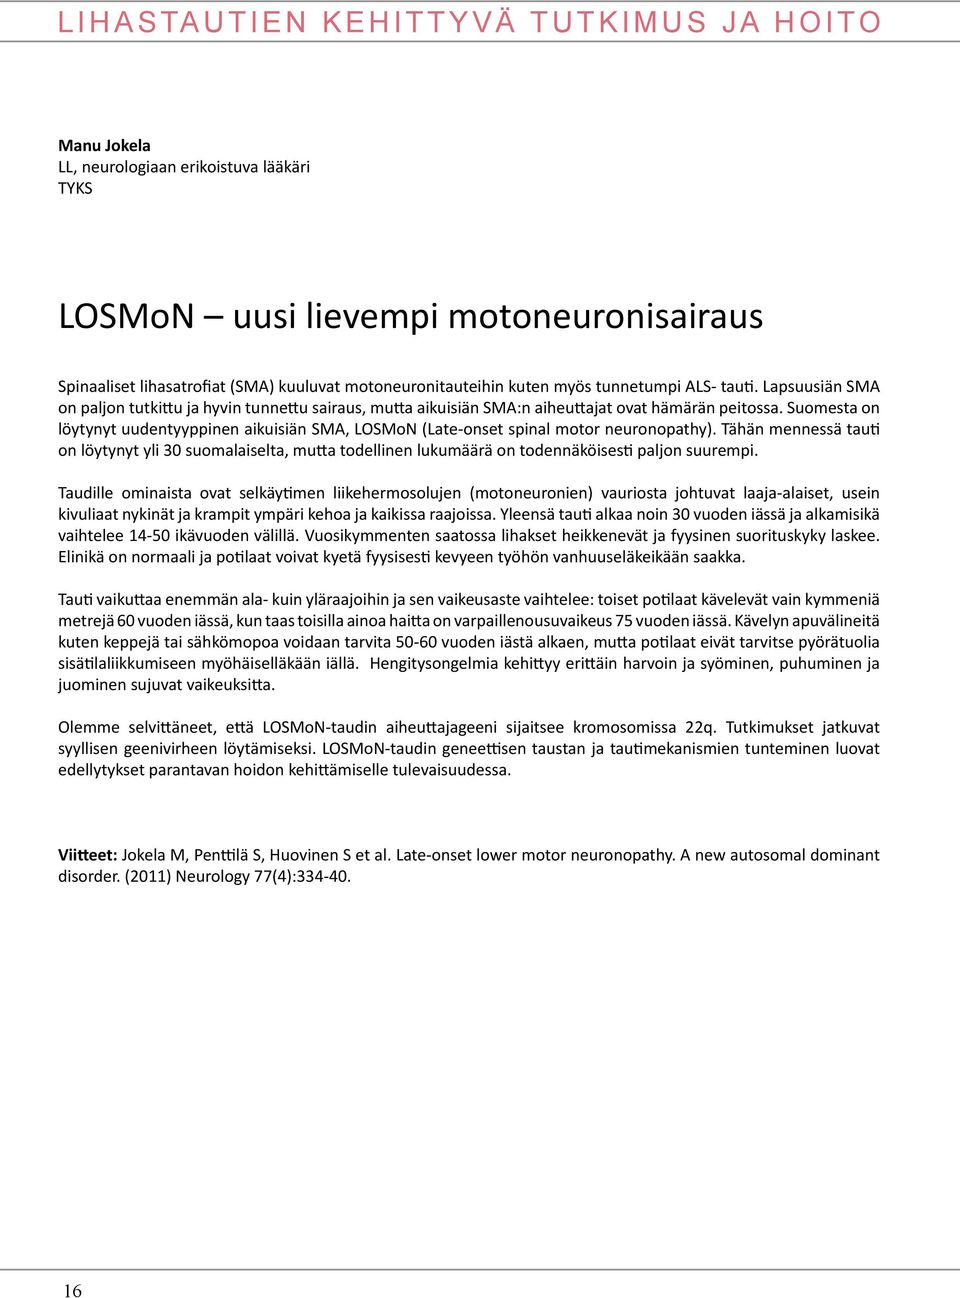 Suomesta on löytynyt uudentyyppinen aikuisiän SMA, LOSMoN (Late-onset spinal motor neuronopathy).